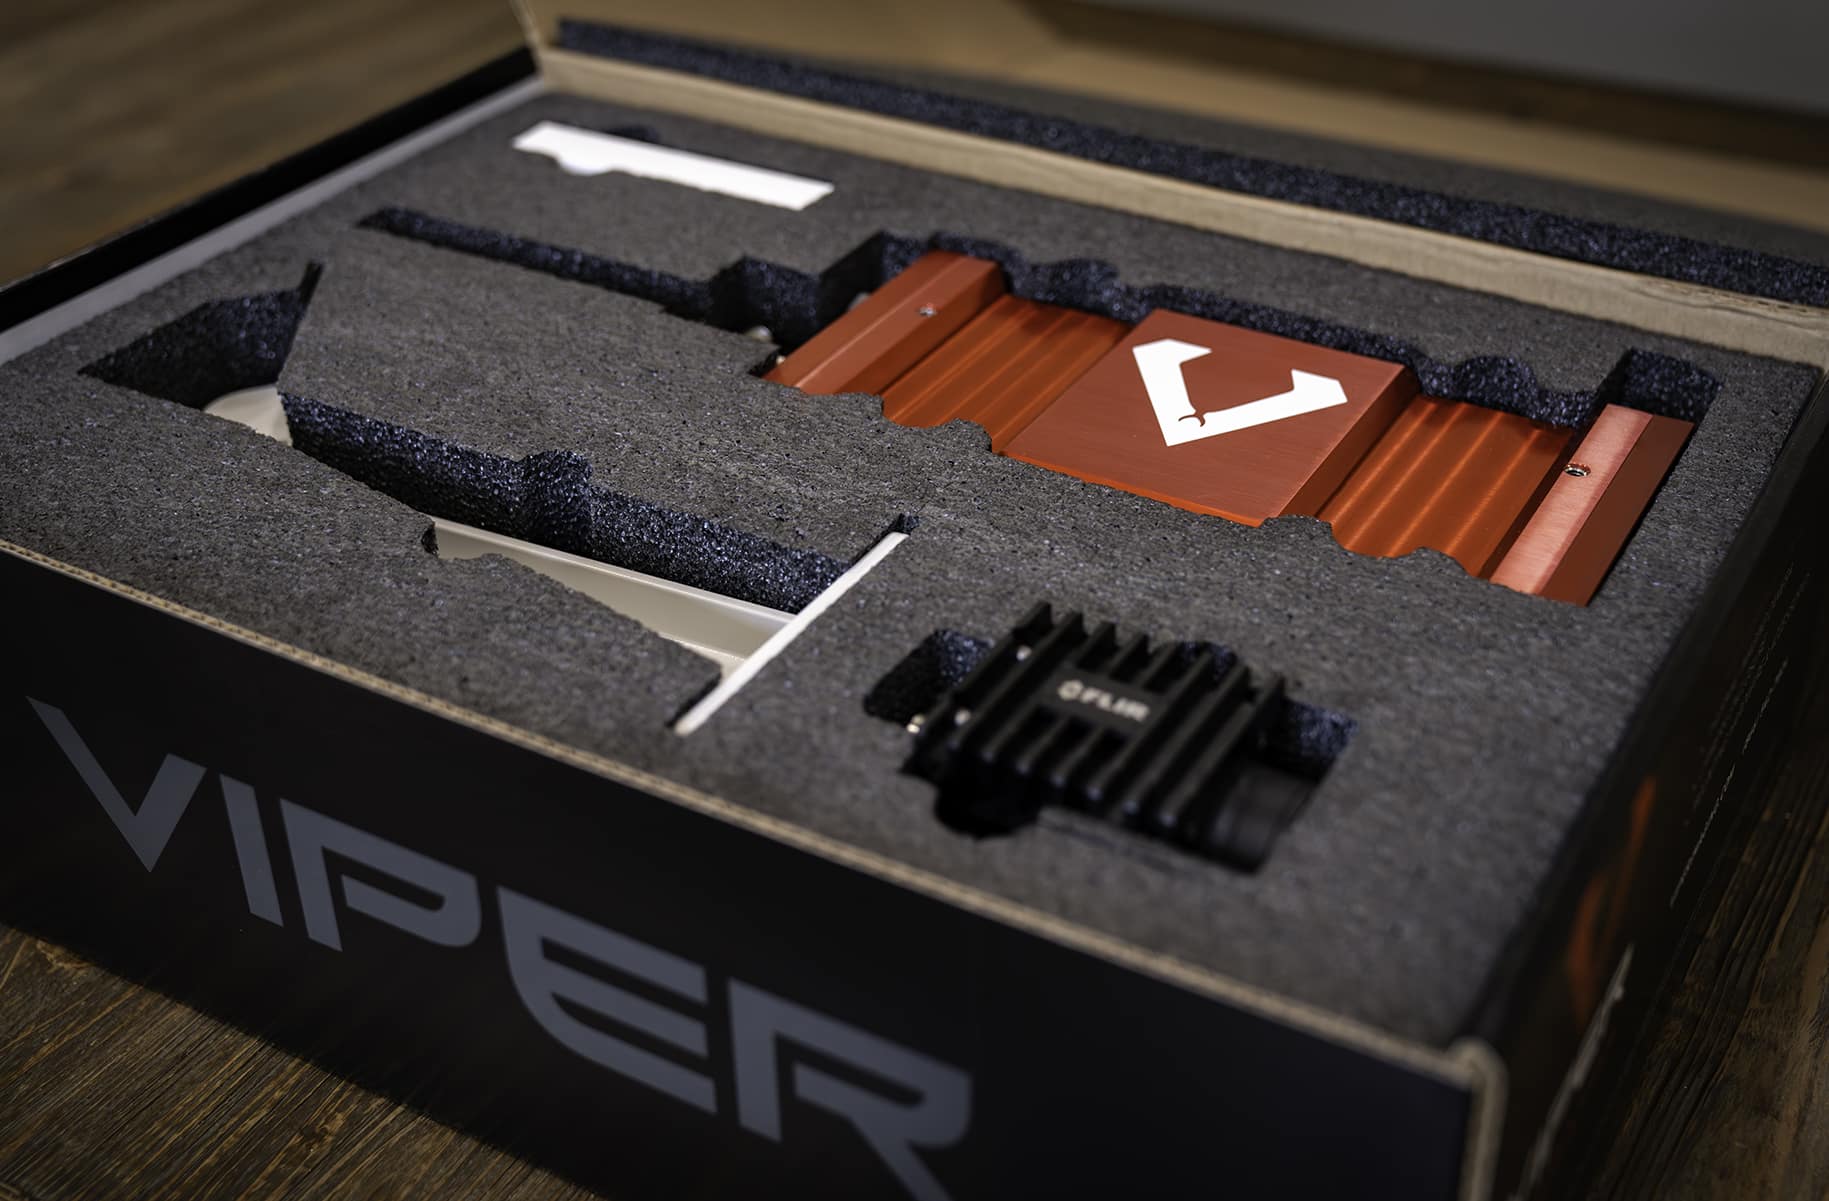 Viper Predator kit - hardware